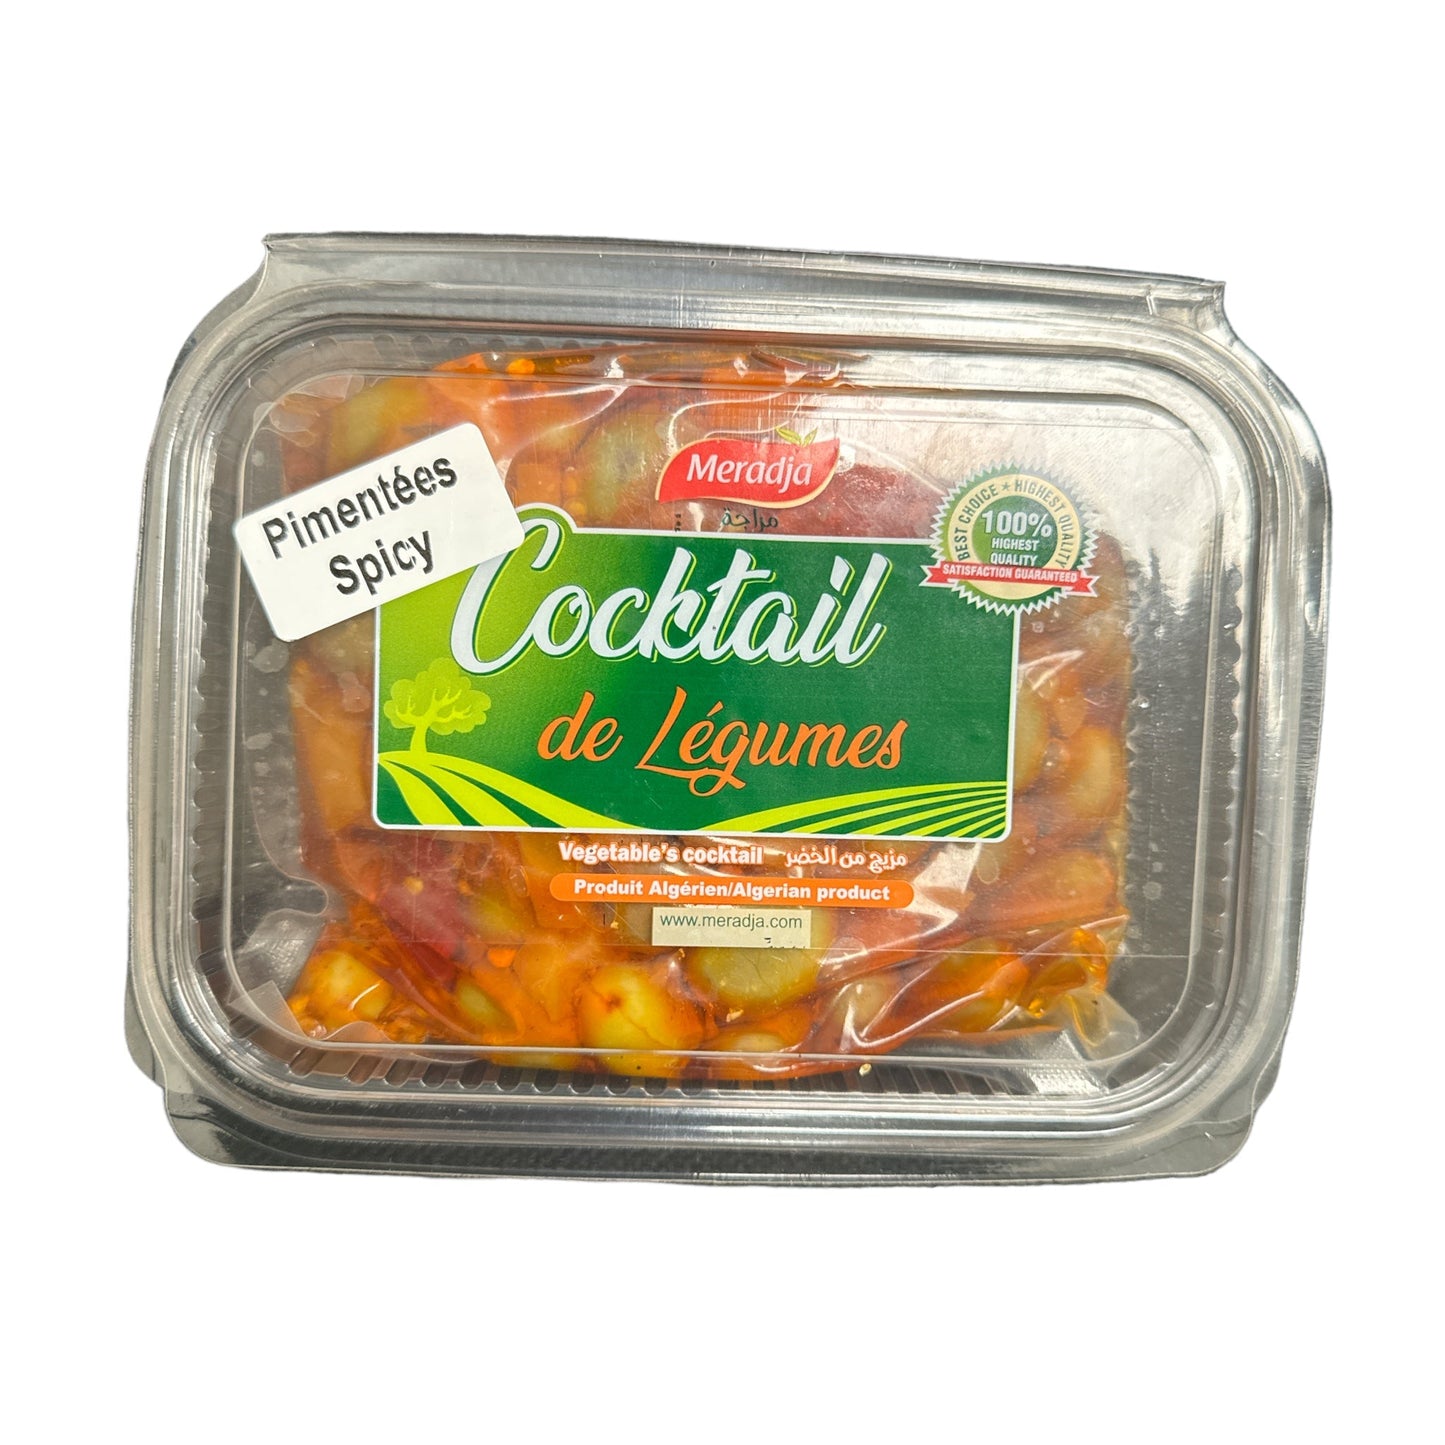 Meradja Spicy Cocktail Salad Olives & vegatbles 470g